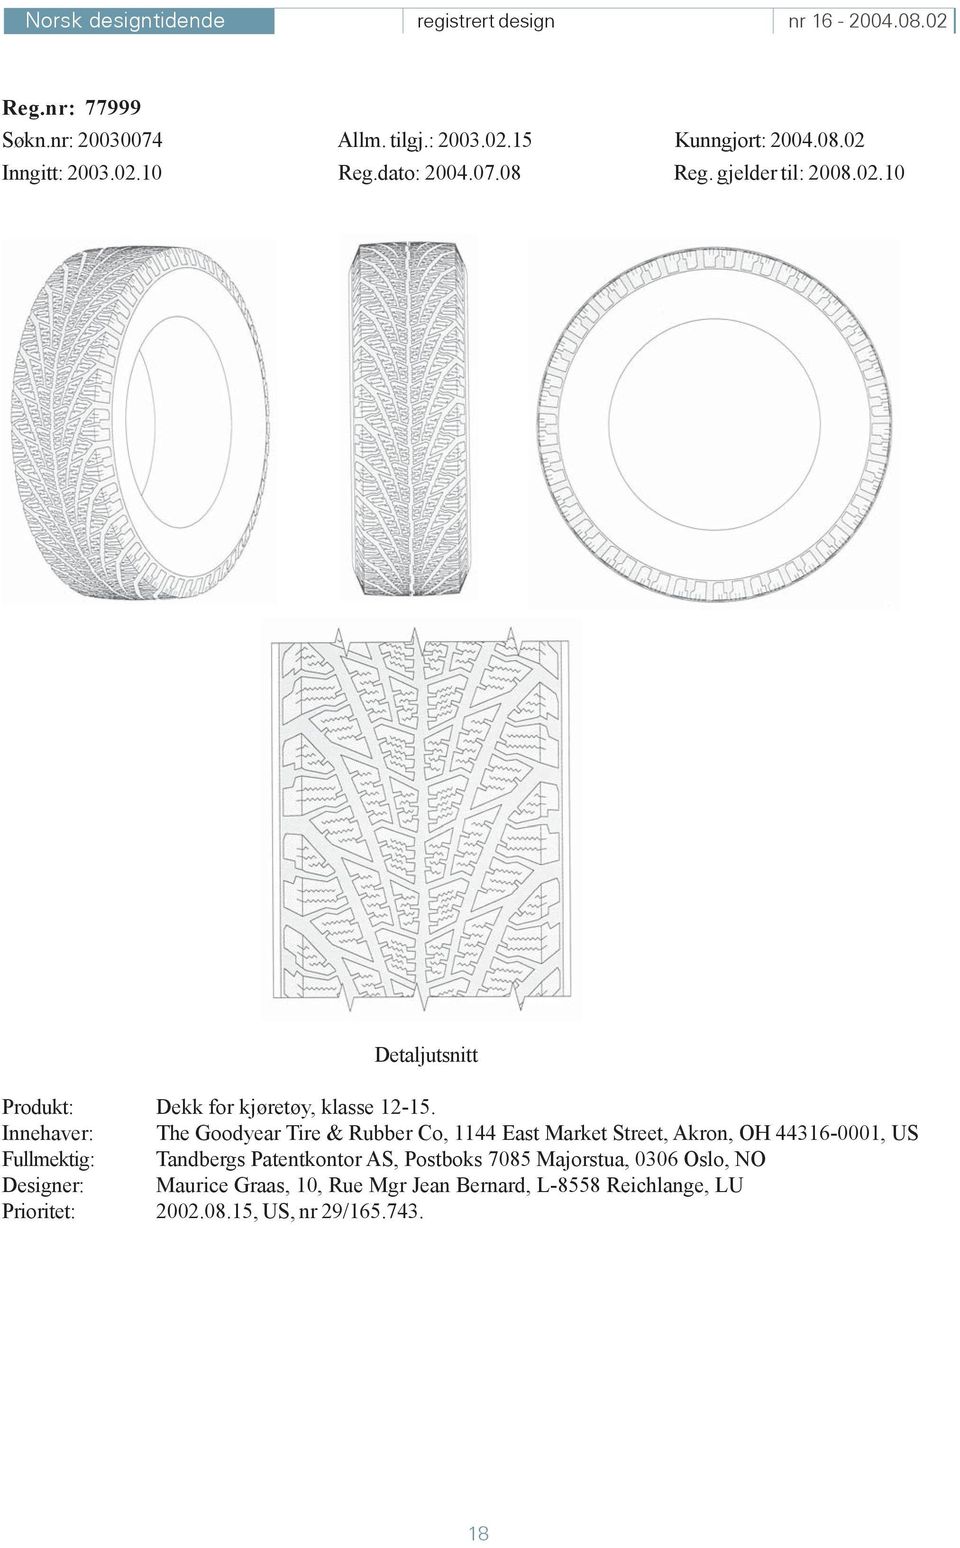 Innehaver: The Goodyear Tire & Rubber Co, 1144 East Market Street, Akron, OH 44316-0001, US Fullmektig: Tandbergs